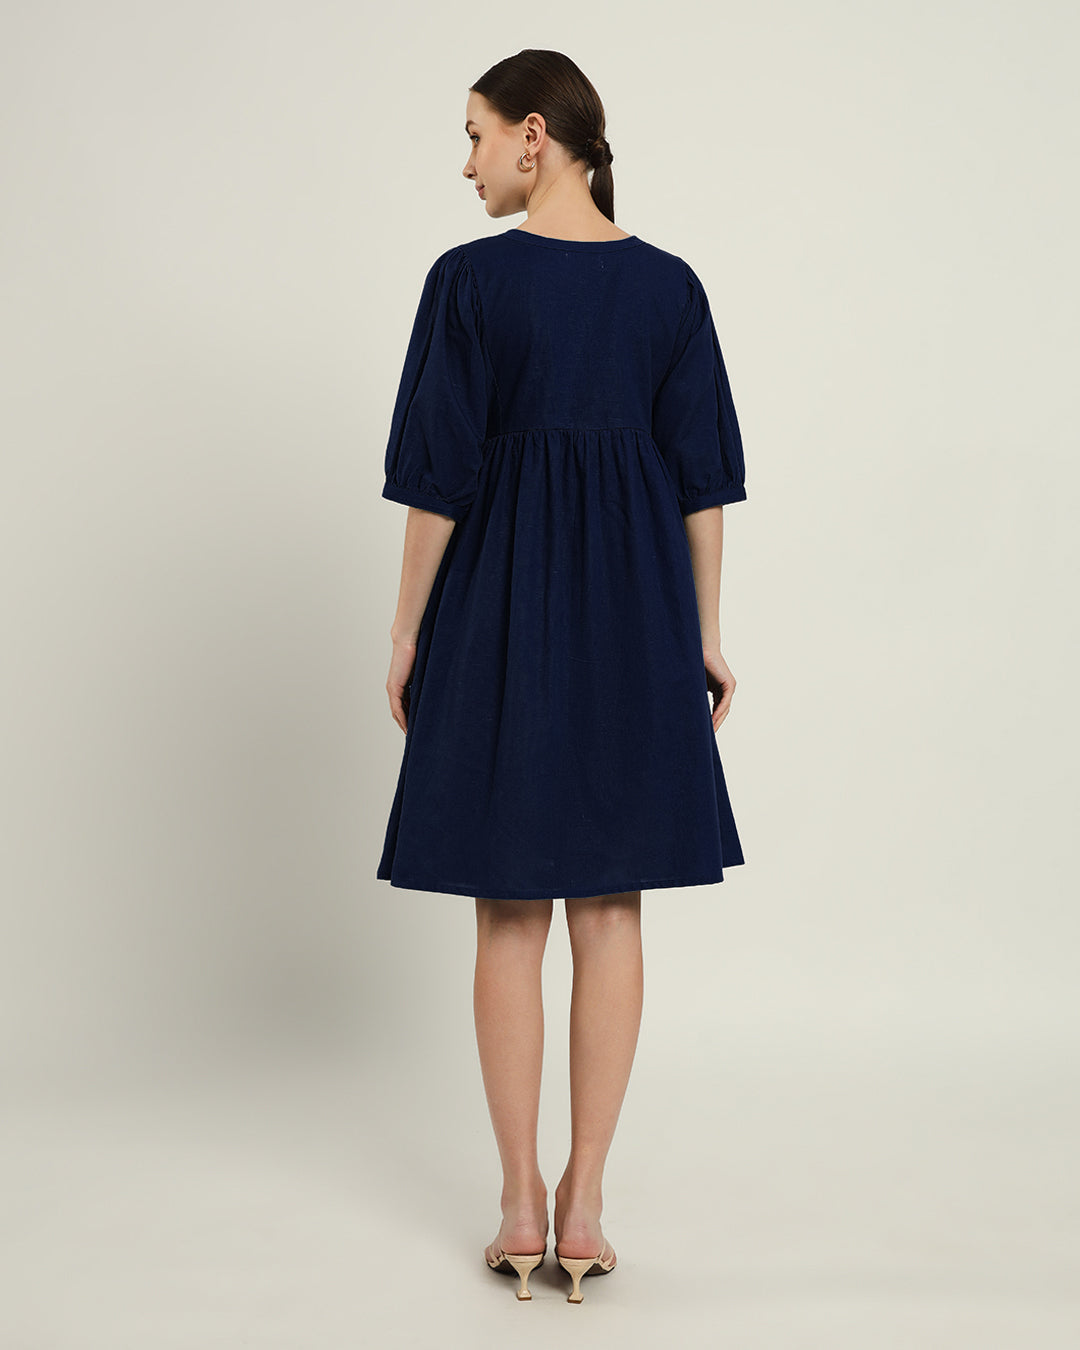 The Aira Daisy Midnight Blue Linen Dress